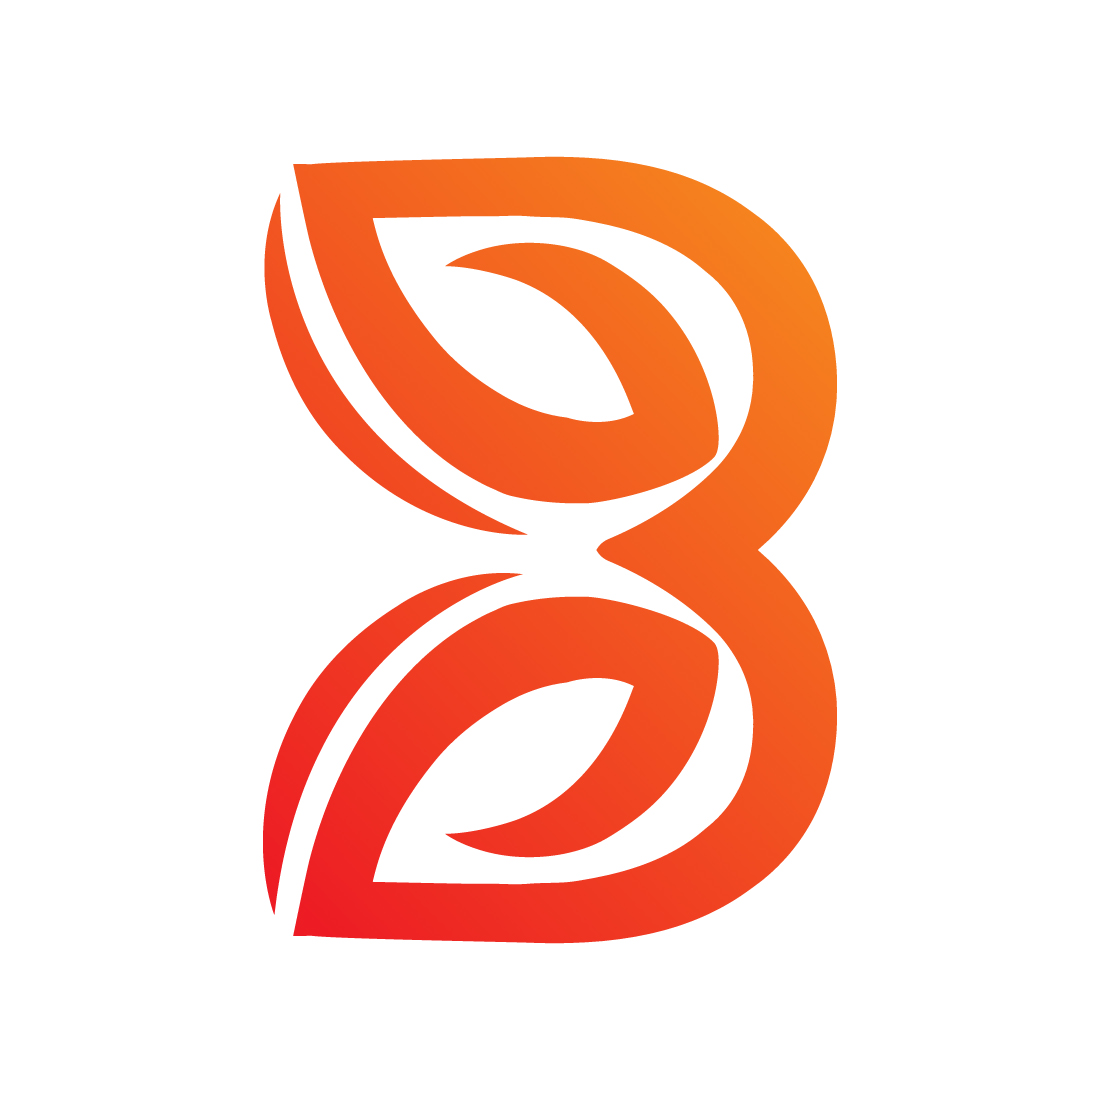 Initials B letters logo design vector images B Leaf logo design orange color best identity  preview image.